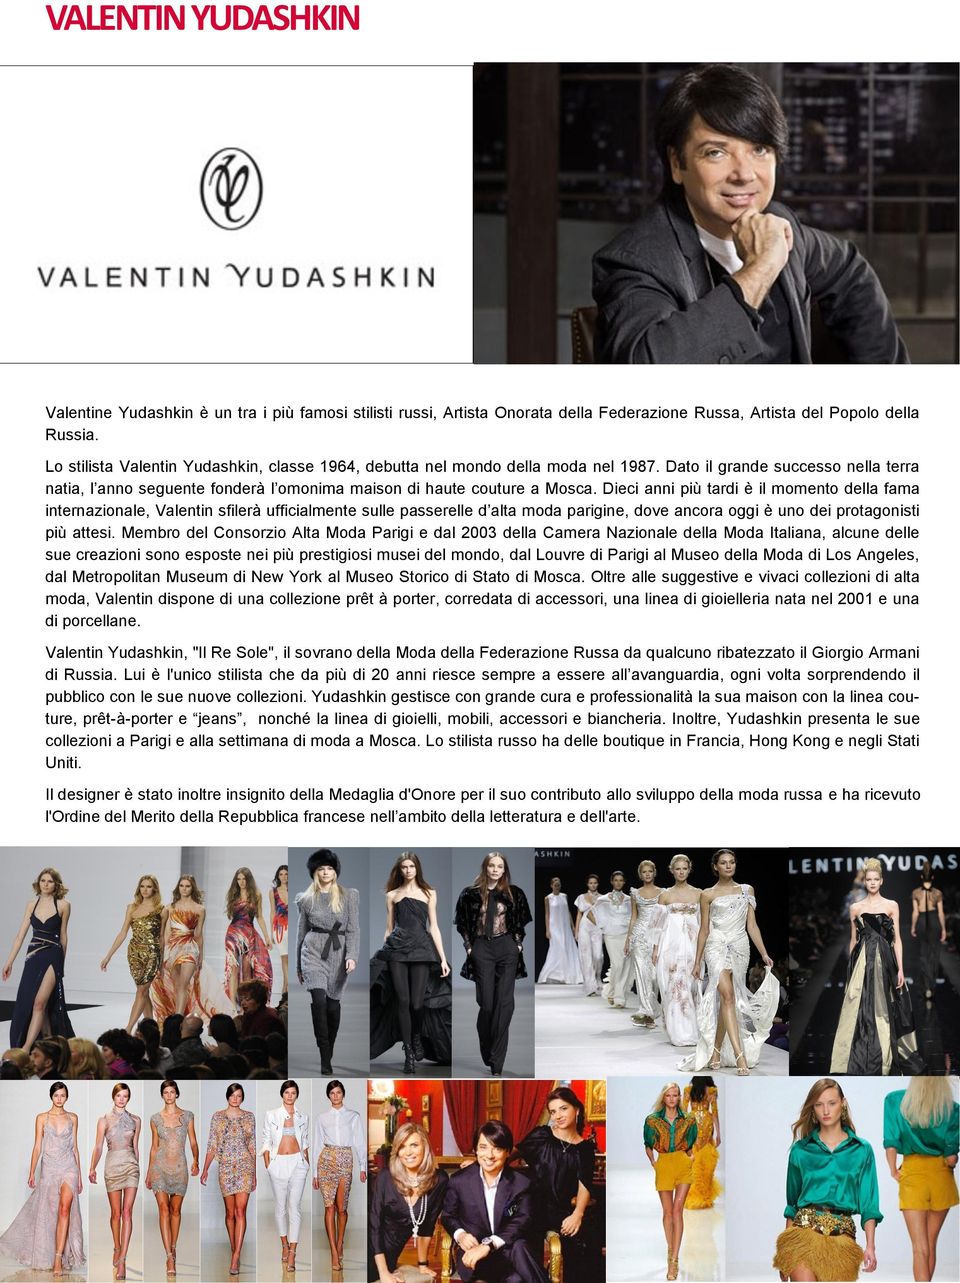 Dieci anni più tardi è il momento della fama internazionale, Valentin sfilerà ufficialmente sulle passerelle d alta moda parigine, dove ancora oggi è uno dei protagonisti più attesi.